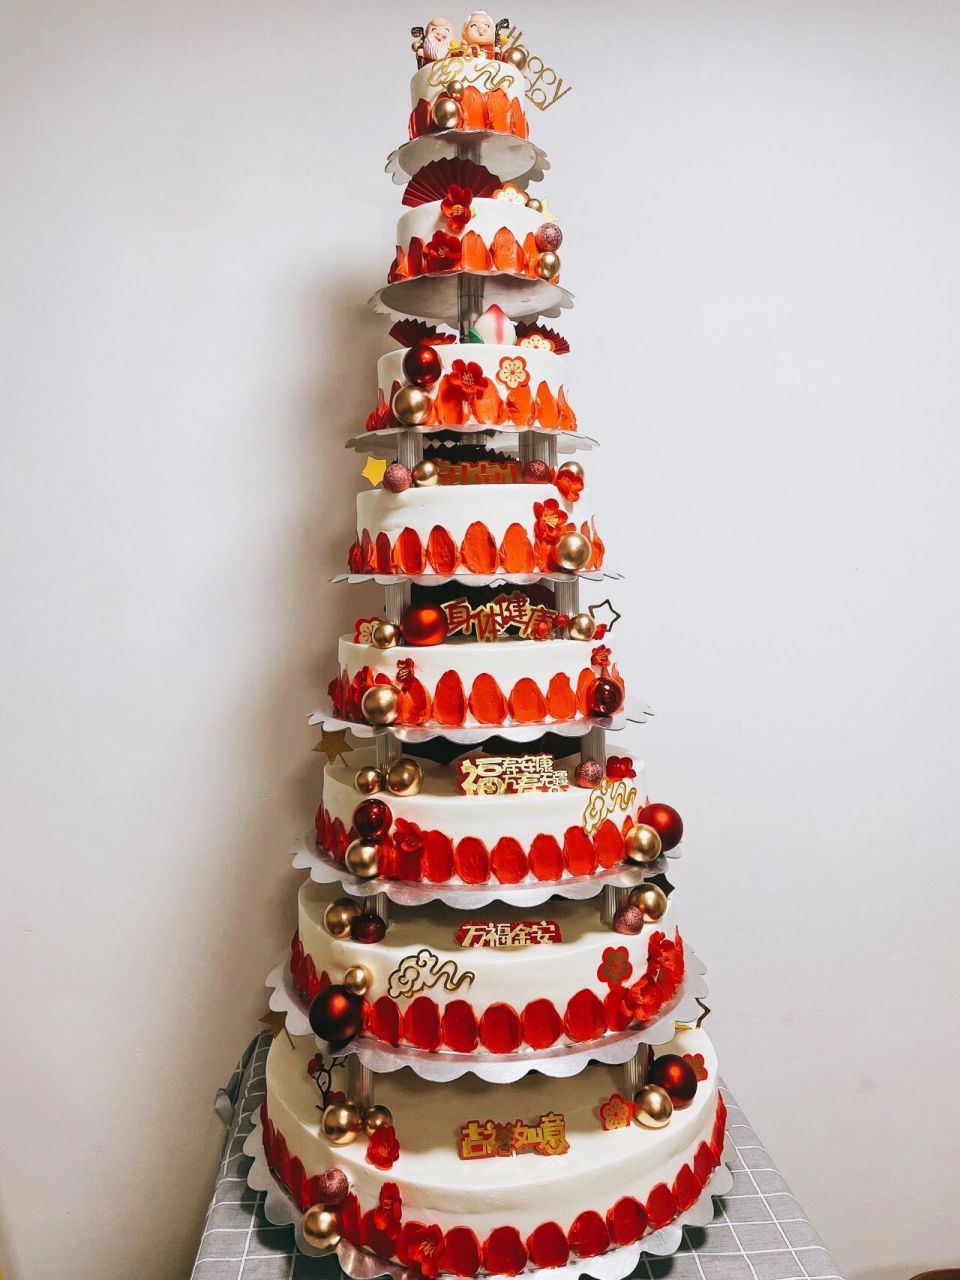 八层多层寿星公寿星婆八十岁红色生日蛋糕